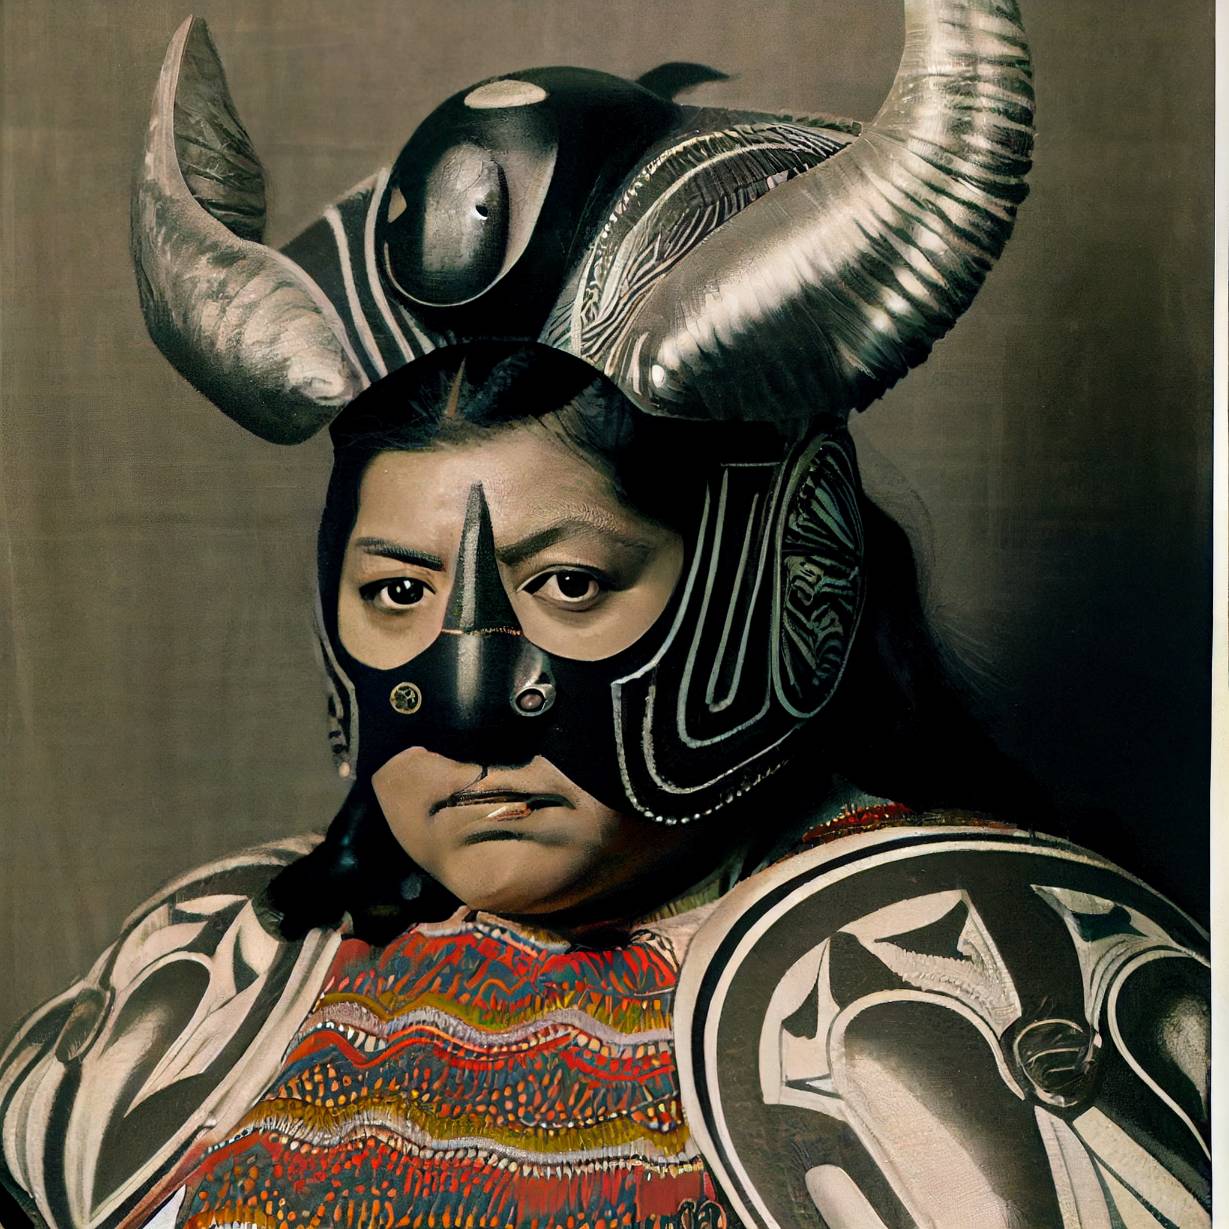 Bauhaus Samurai Guatemalan Luchador